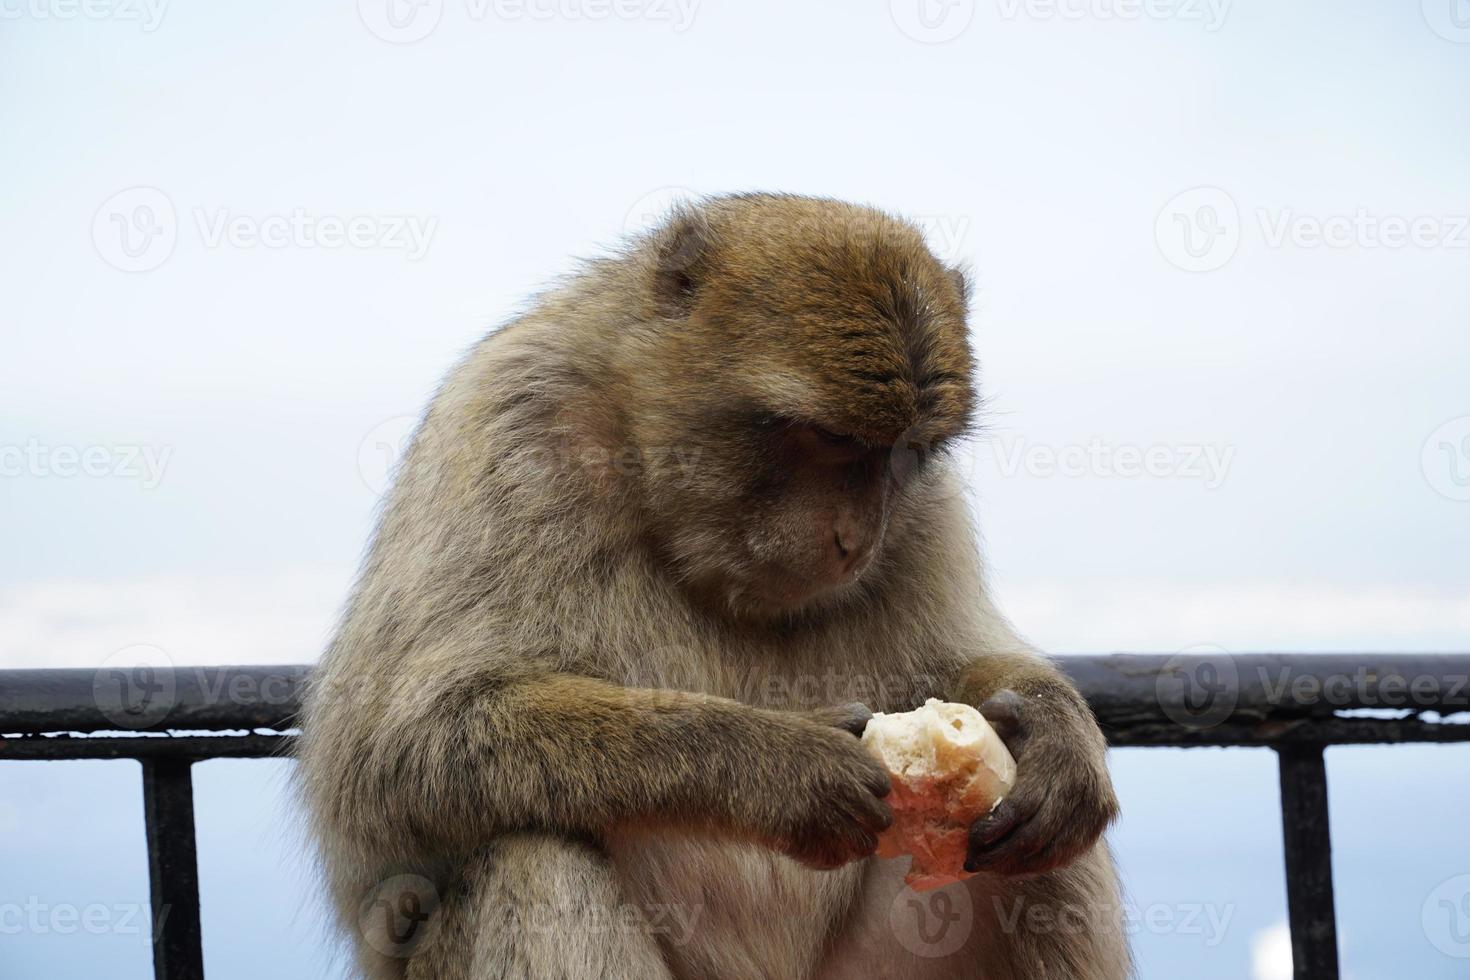 soltero berbería macaco mono comiendo un rodar foto